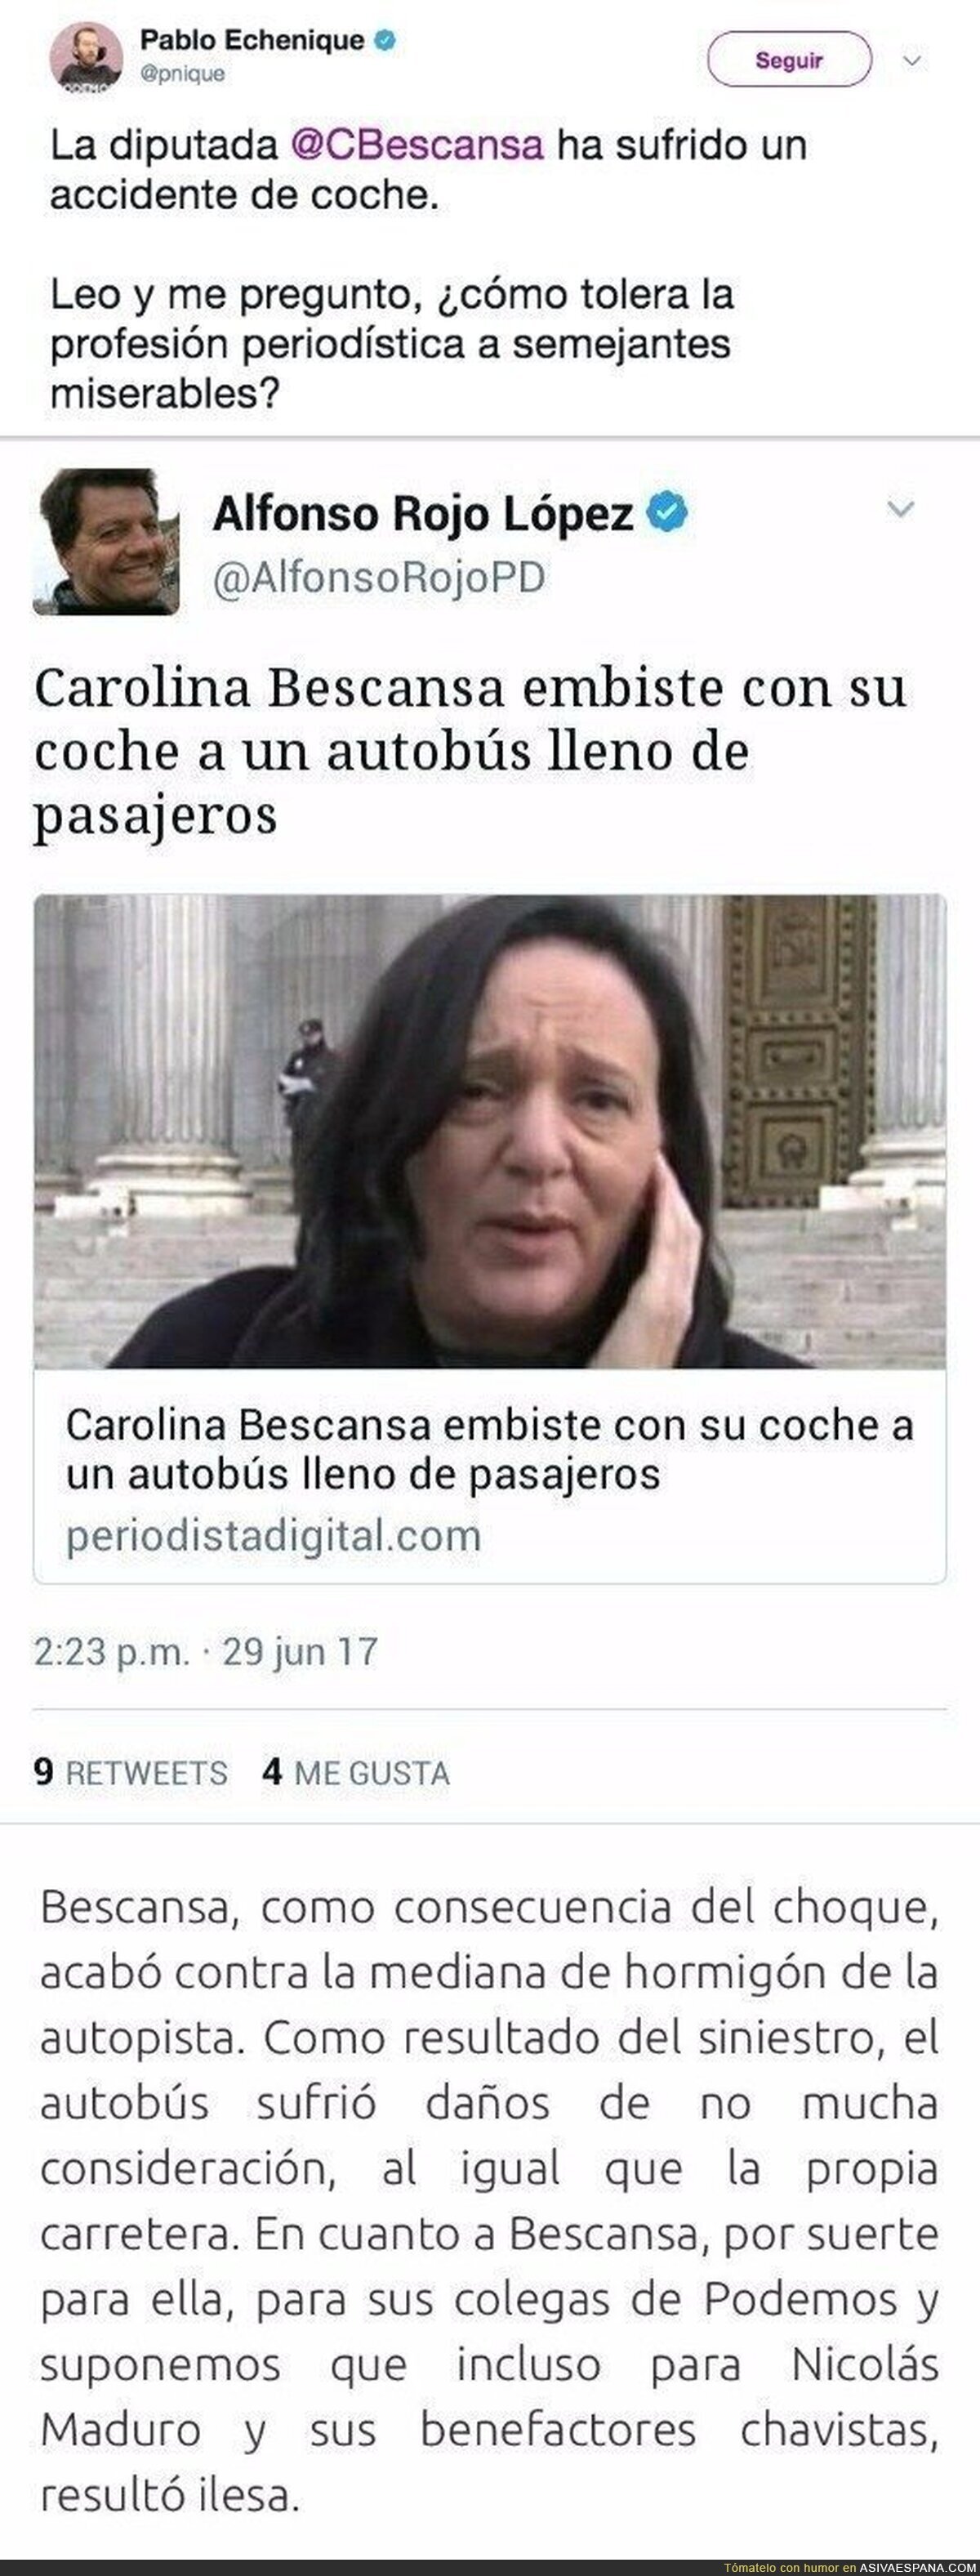 Carolina Bescansa ha sufrido un accidente y un periódico es capaz de escribir estas miserias de ella